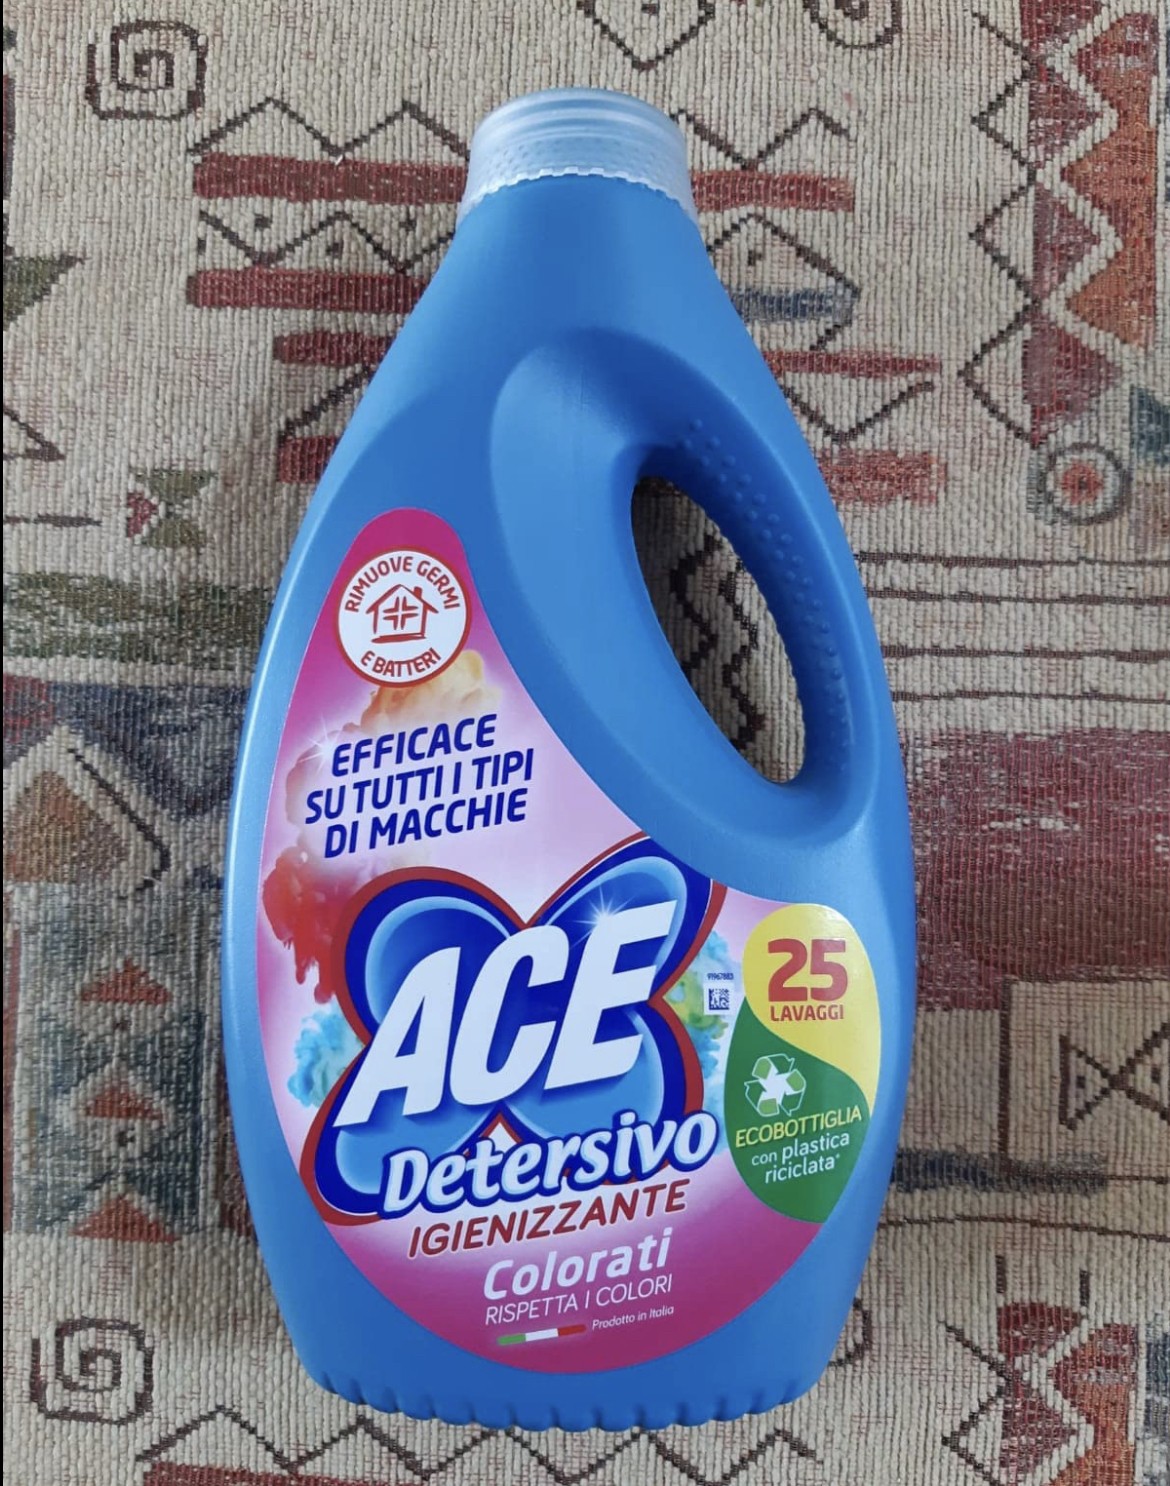 ACE Detersivo Igienizzante Colorati - MammacheTest